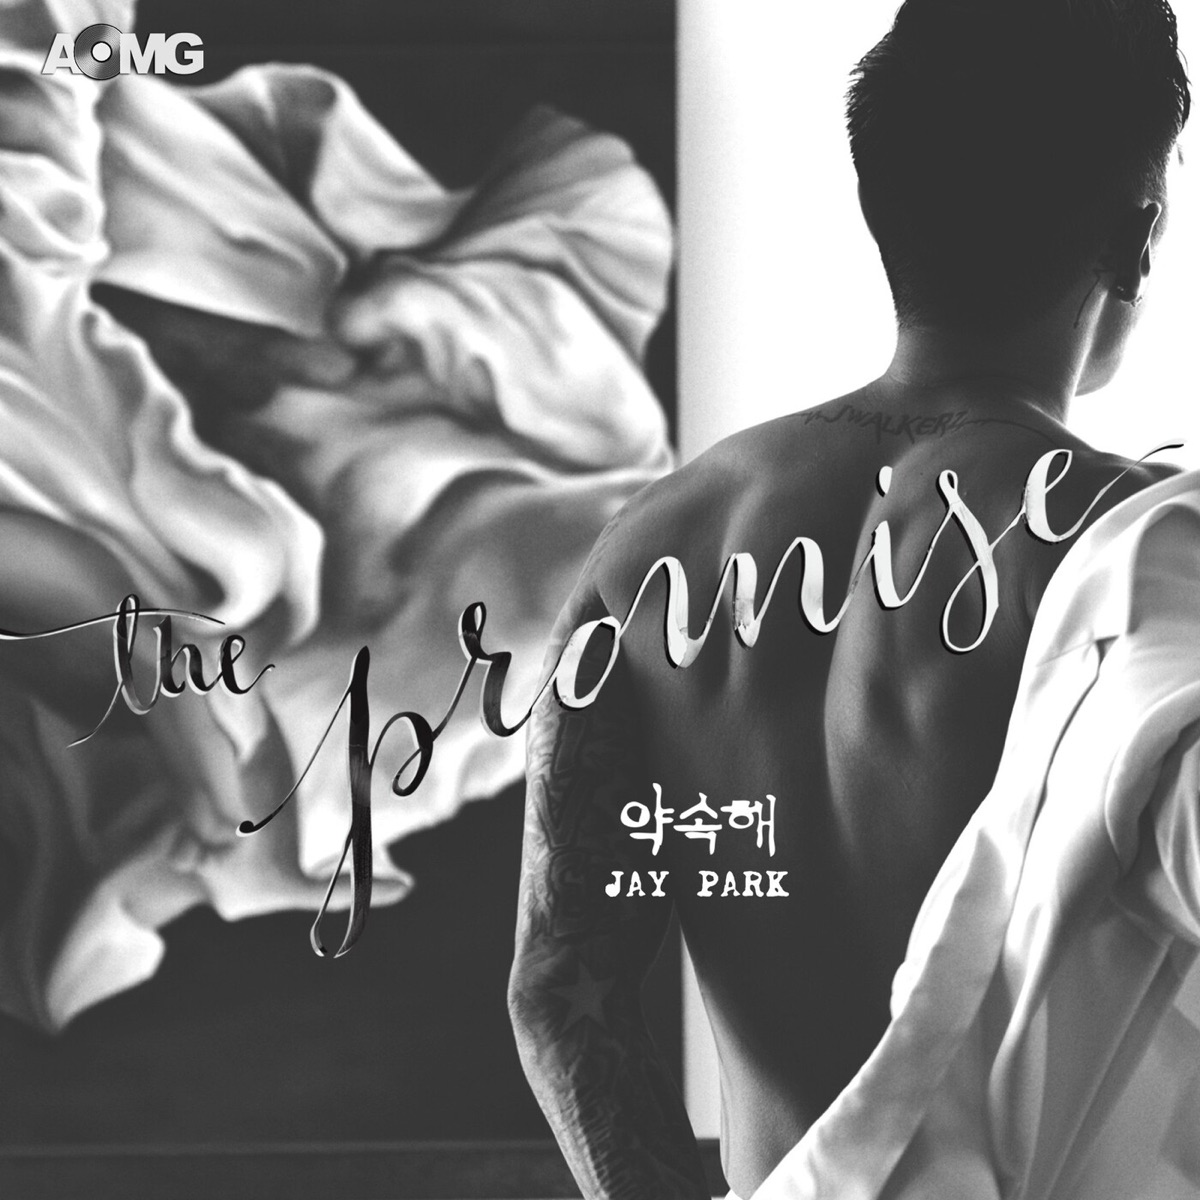 Jay Park – The Promise – Single